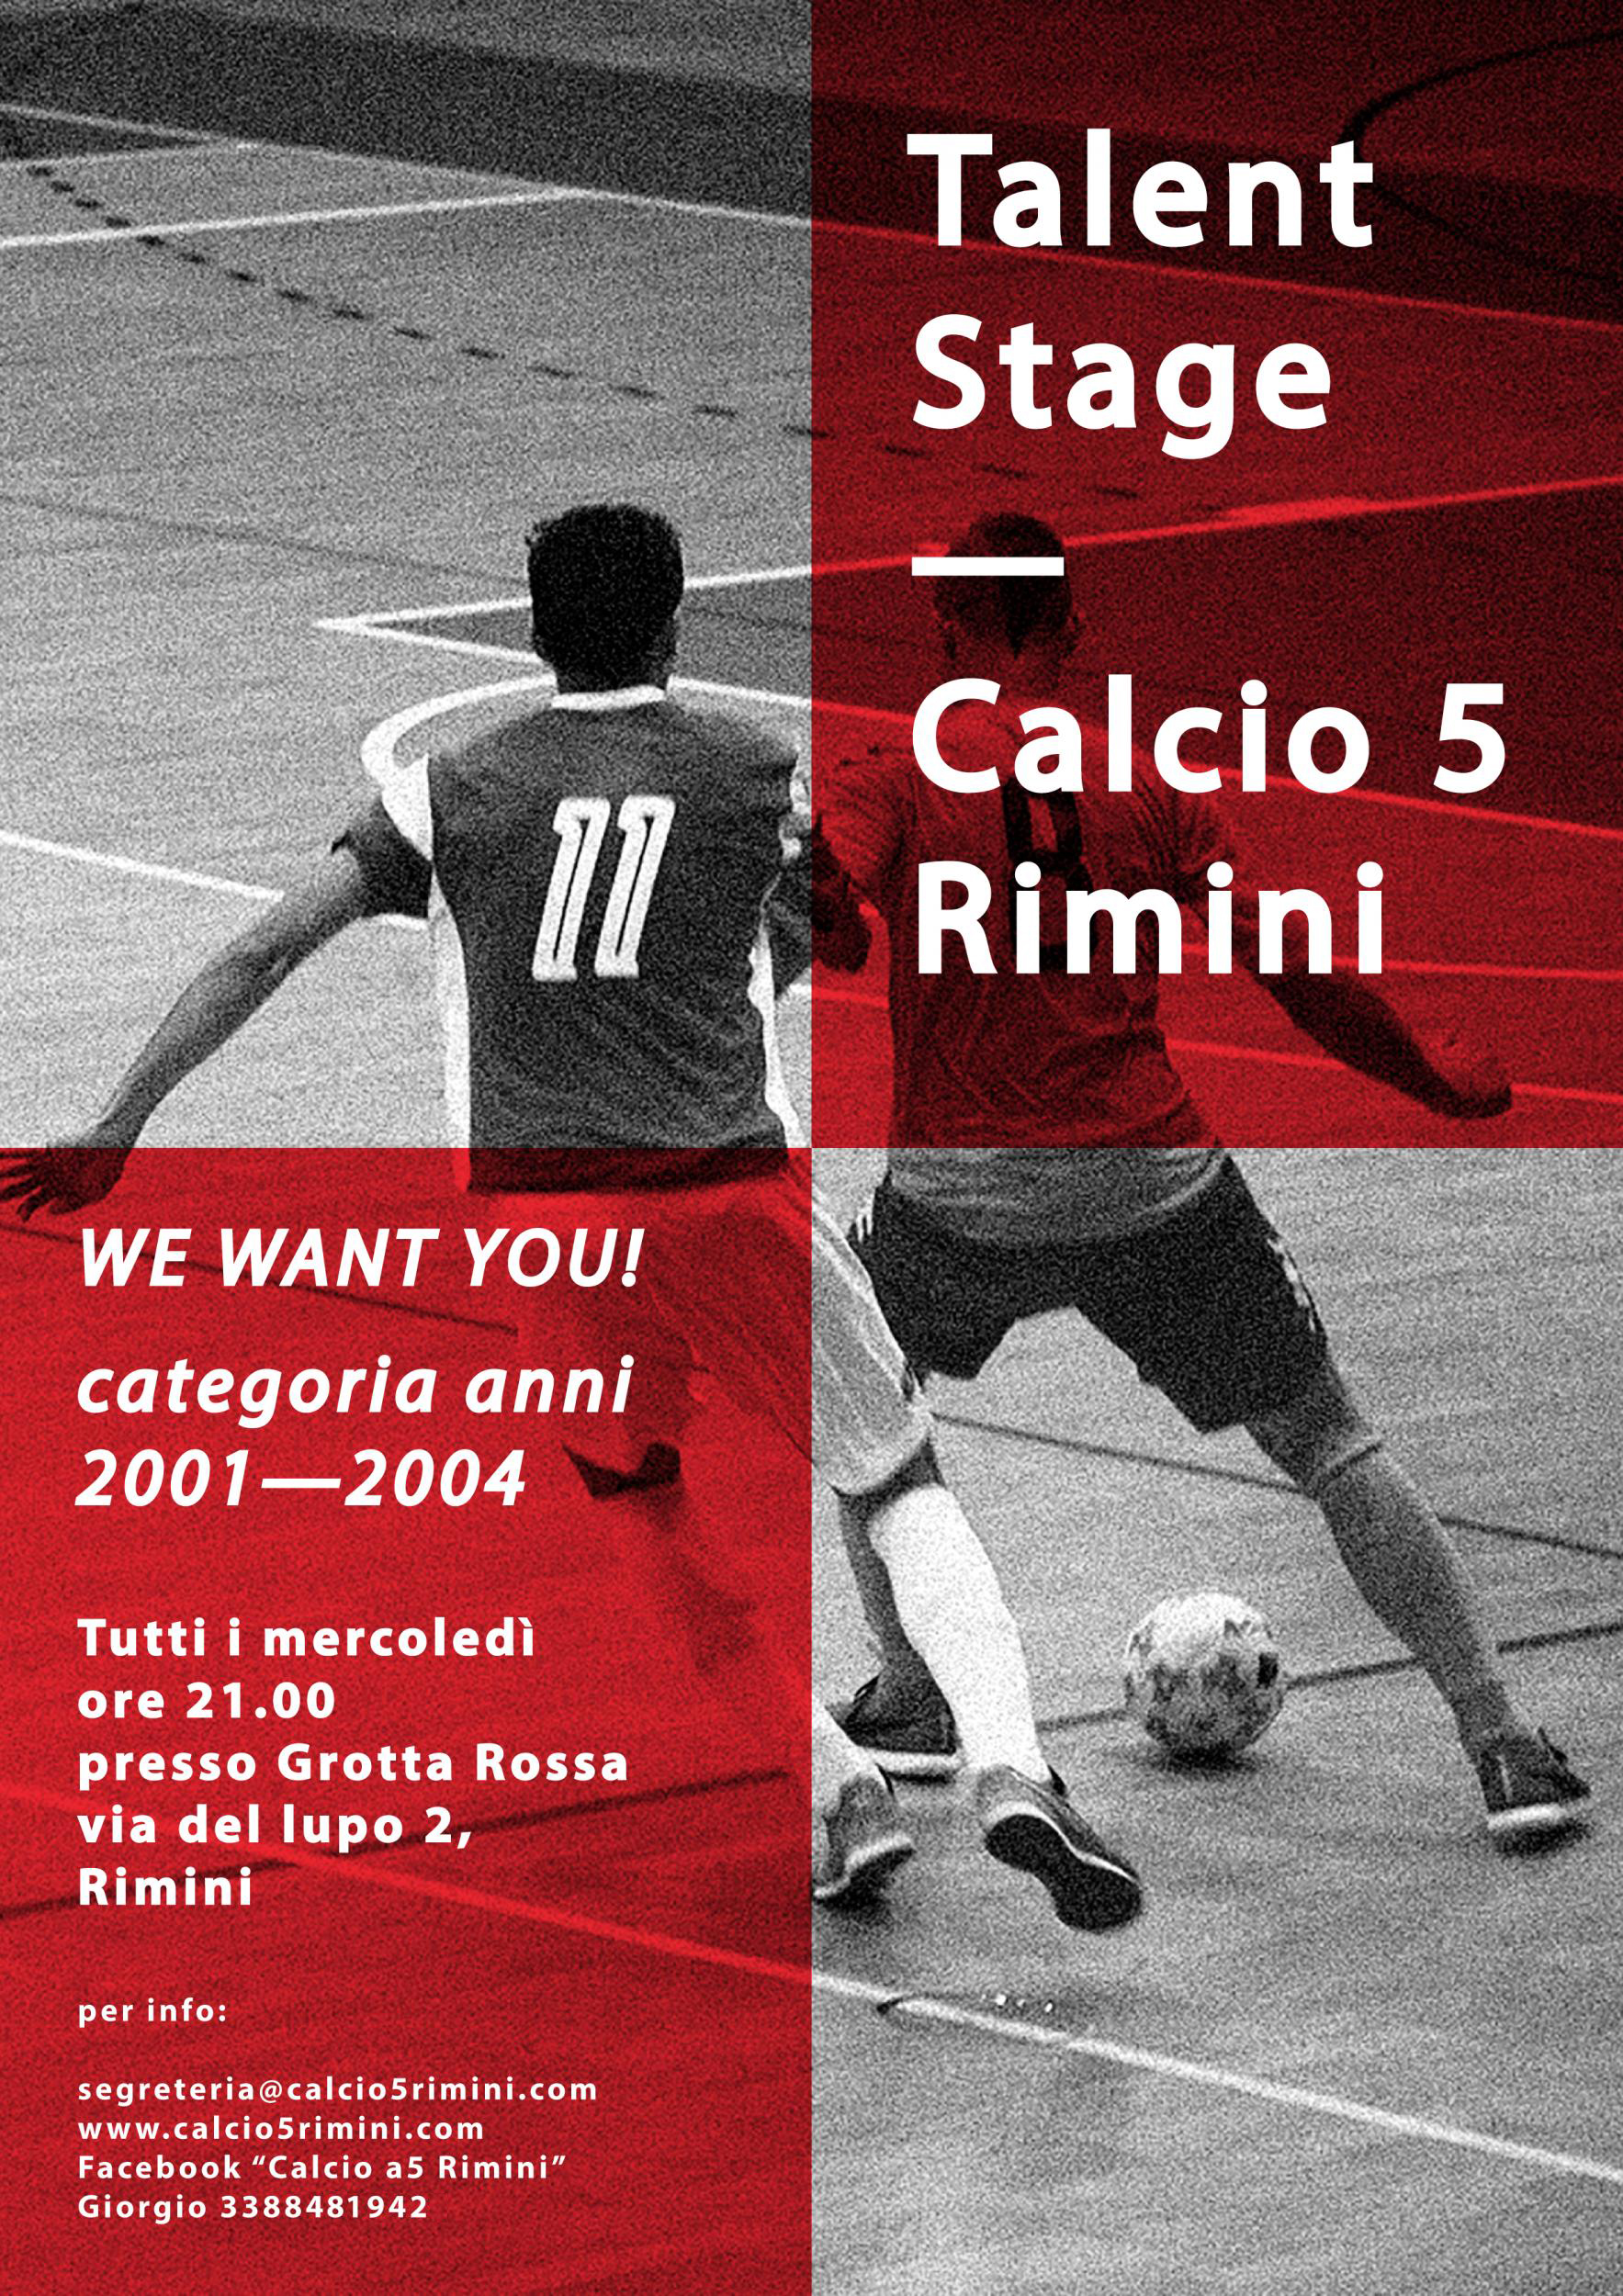 Talent Stage! Calcio a 5 Rimini in cerca di talenti